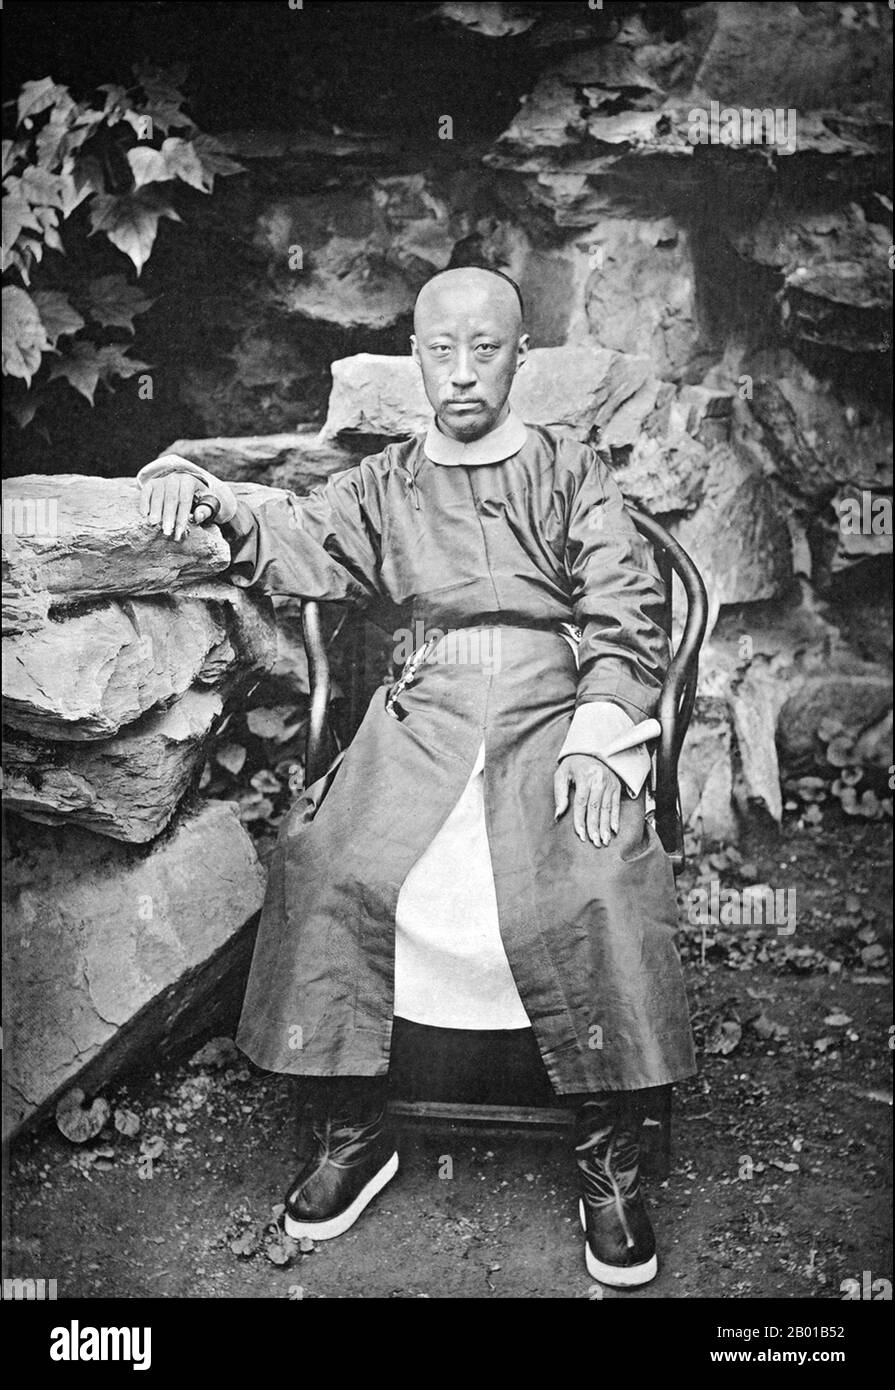 Chine : Prince Kung (11 janvier 1833 - 29 mai 1898), 6th fils de l'empereur Daoguang. Photo de John Thomson (14 juin 1837 - 29 septembre 1921), 1872. Le Prince Gong de 1st, communément connu à son époque comme le Sixième Prince, est né Yixin du clan Aisin-Gioro (le clan impérial Manchu de la dynastie Qing). Il était chargé de gouverner la Chine en 1860s et 1870s. On se souvient de lui pour avoir défendu le maintien de liens étroits avec les Occidentaux et ses tentatives de modernisation de la Chine. Il a été populairement surnommé « le numéro six » en chinois, en référence à ses contacts fréquents avec les Occidentaux. Banque D'Images